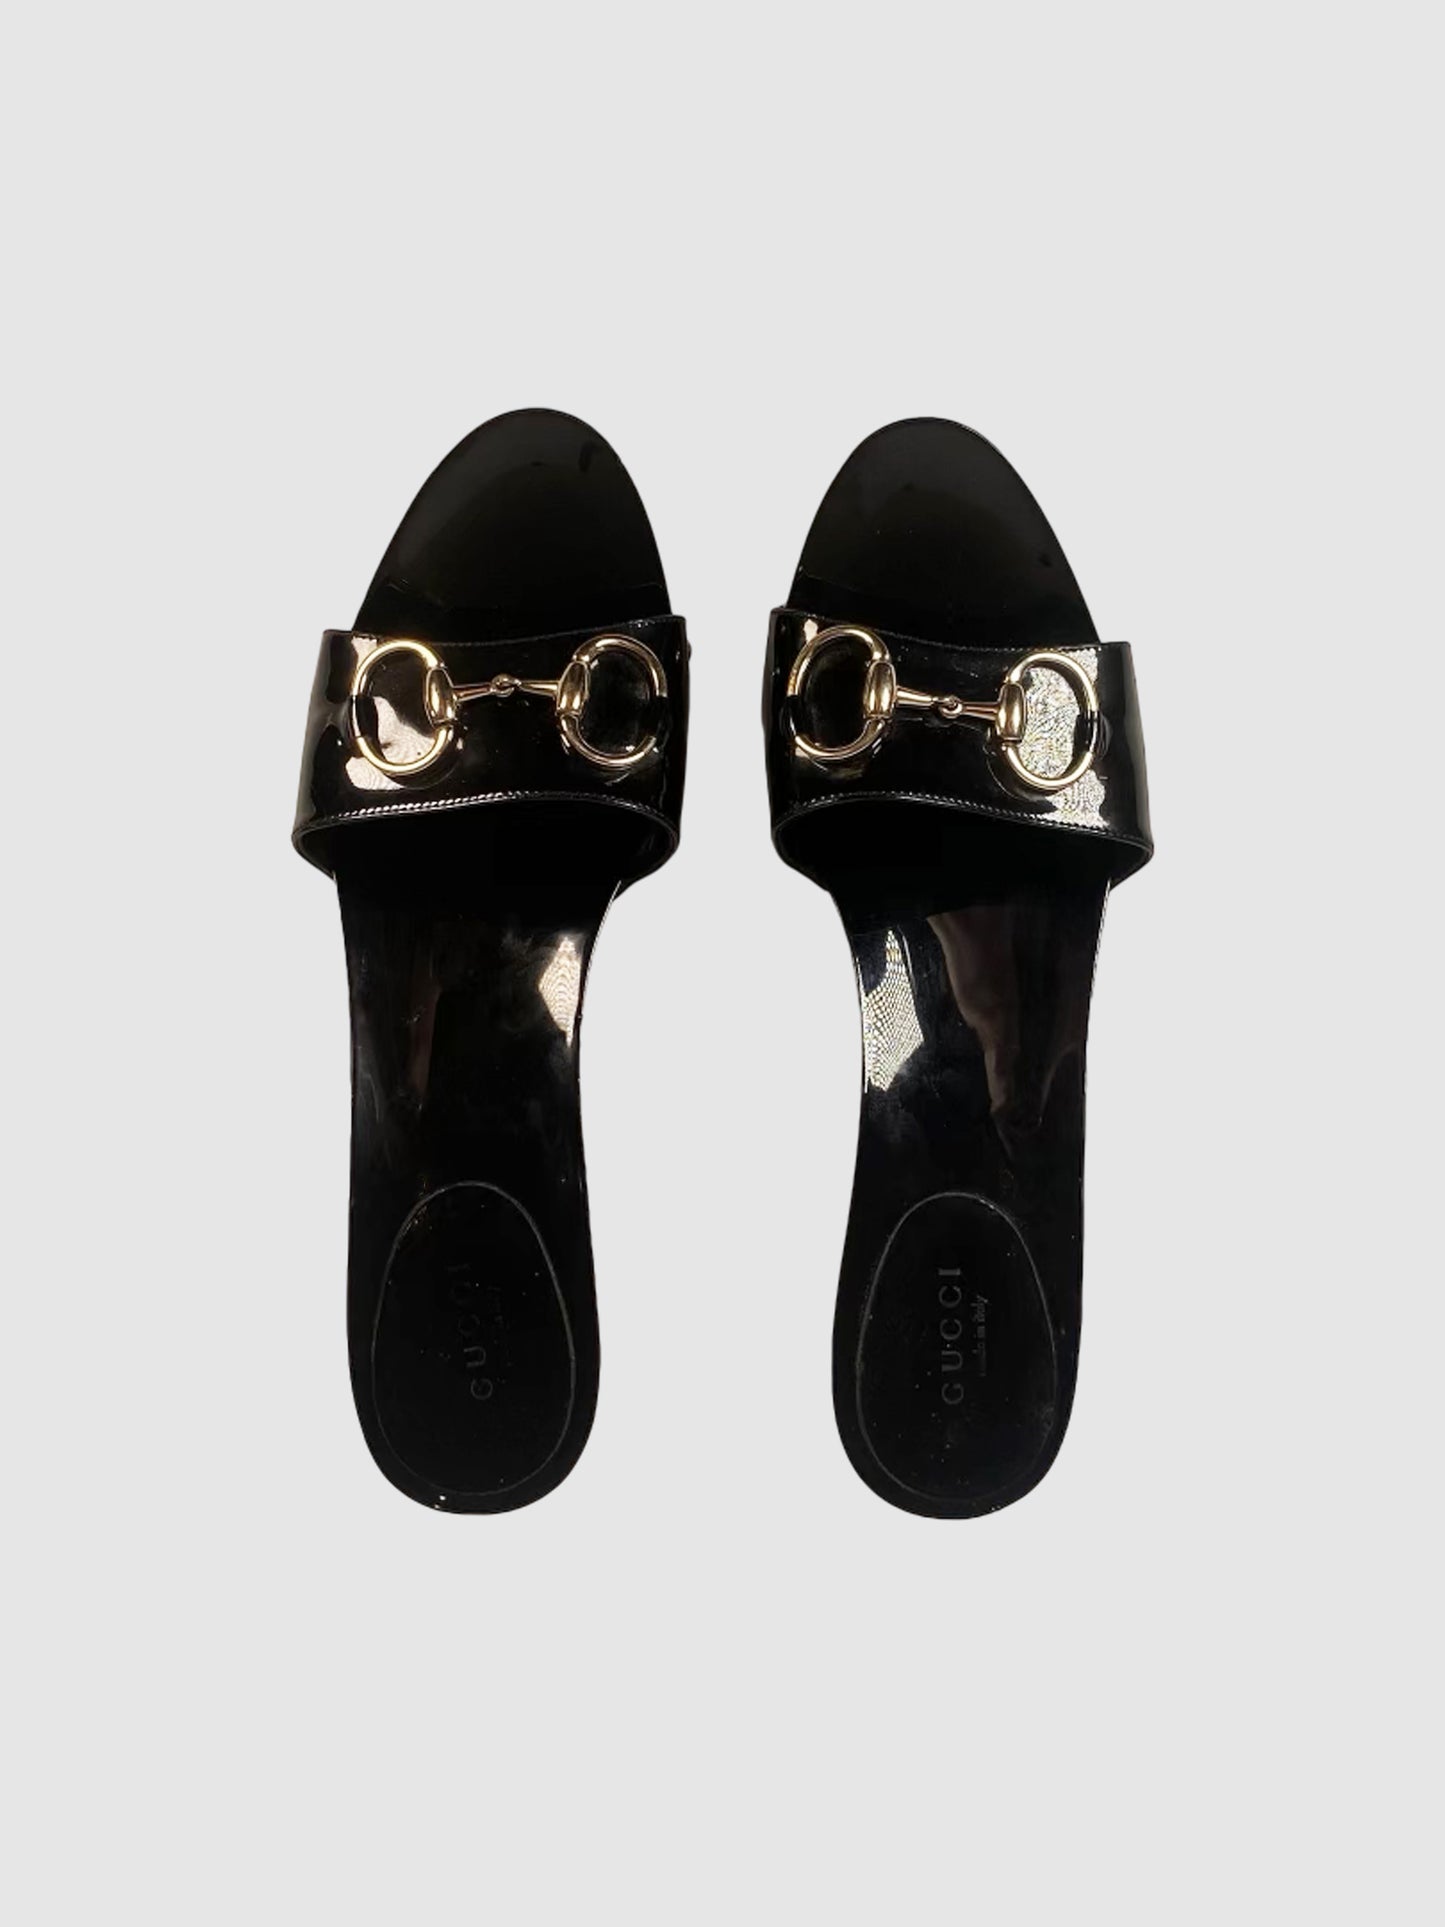 Gucci Horsebit Patent Leather Sandals - Size 38